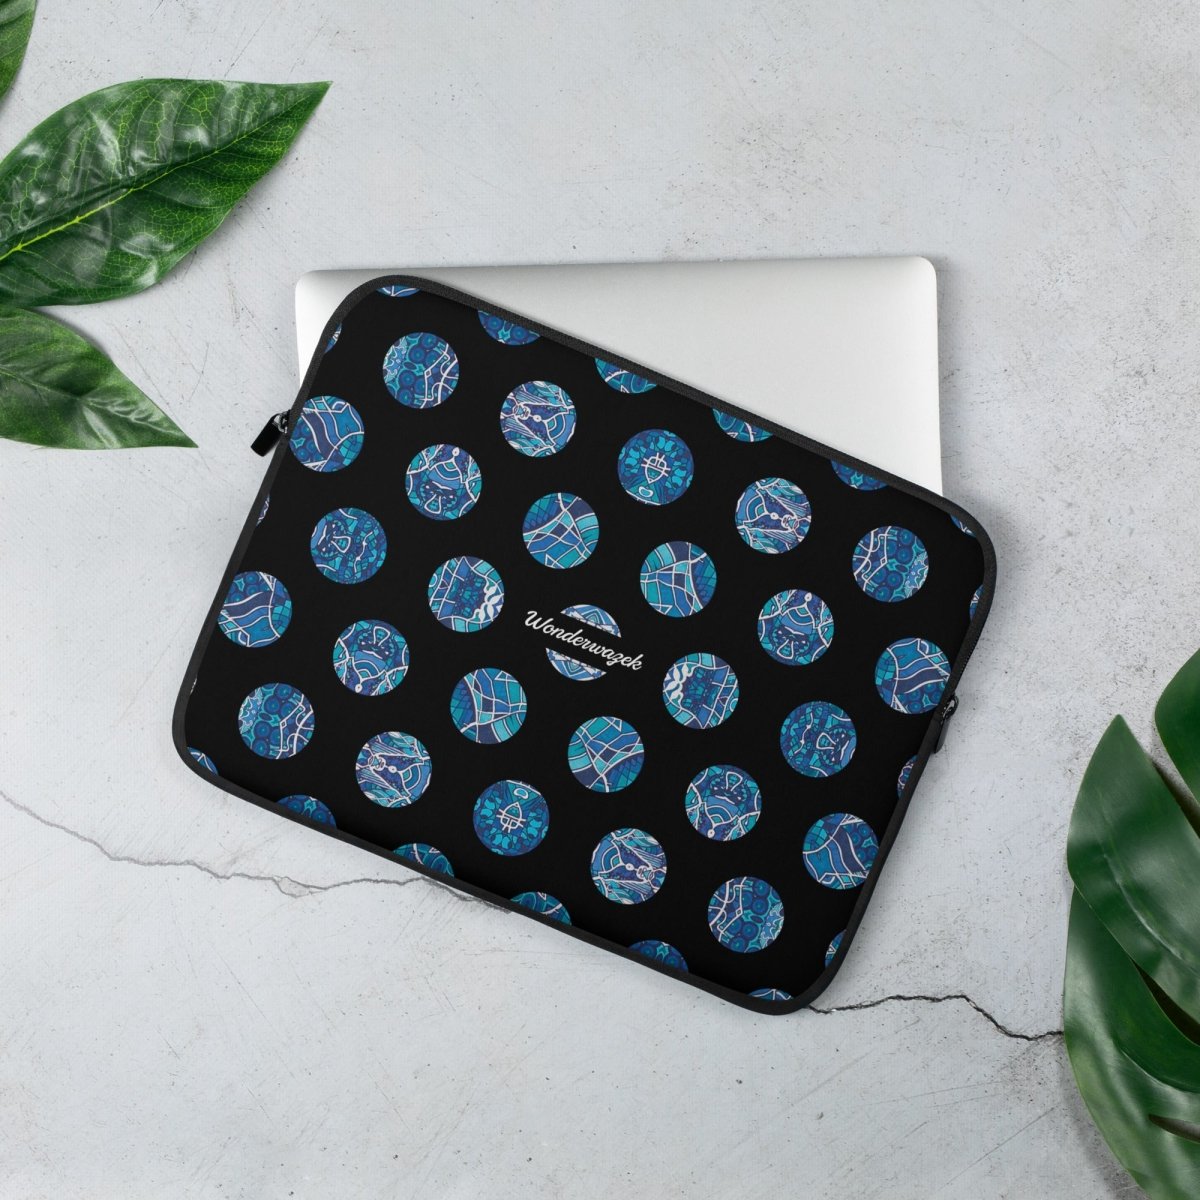 Laptoptasche • Wassergeister – Punkte, blau, schwarz, weiß - Wonderwazek